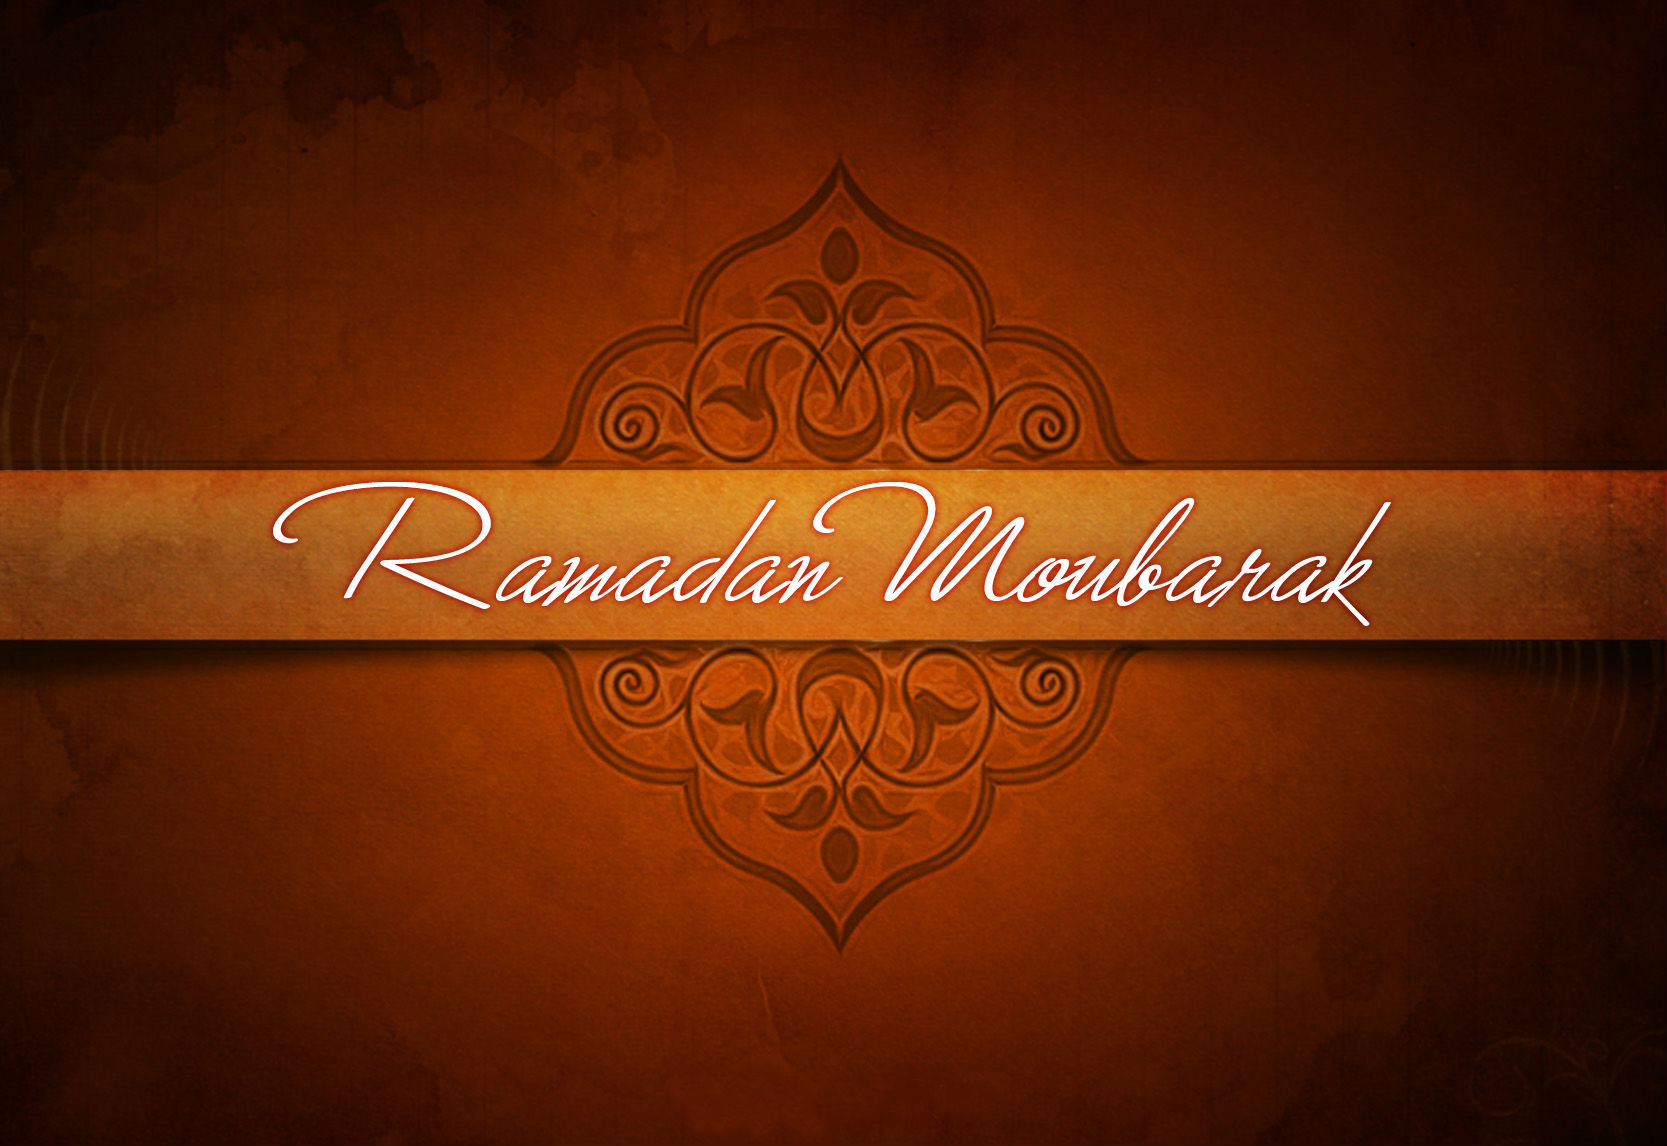 Ramadan Mubarak Hd Wallpapers 1080p - 1667x1146 Wallpaper 